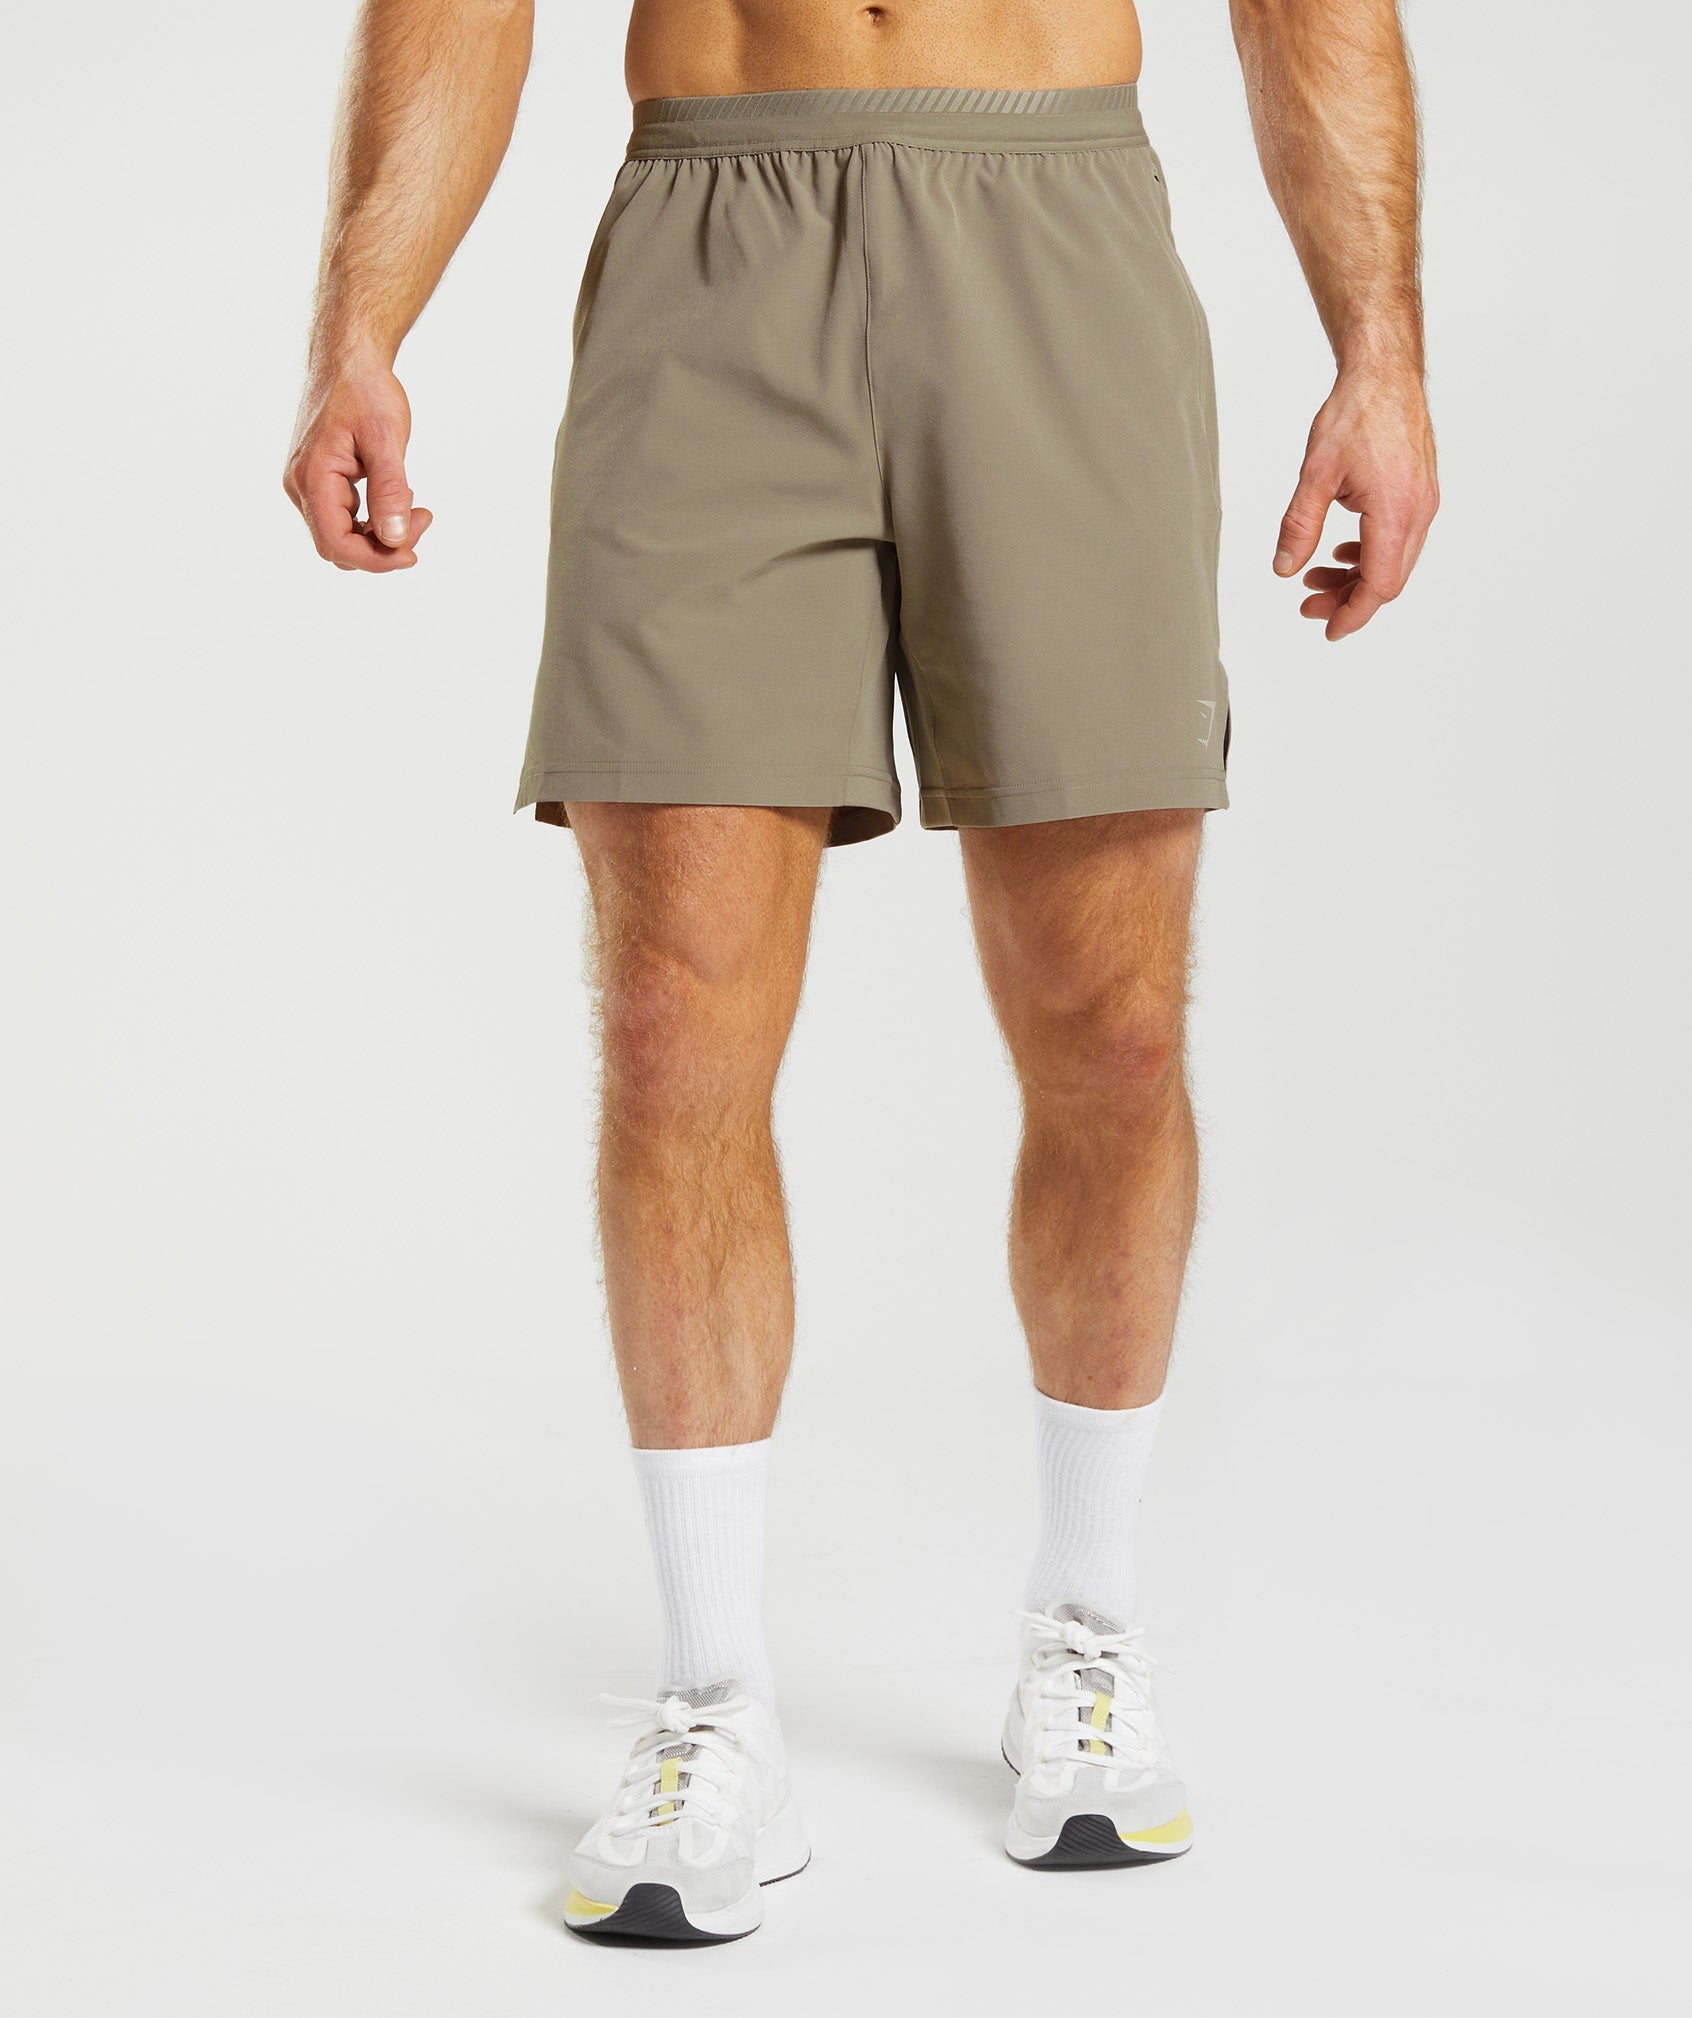 Apex 7" Hybrid Shorts